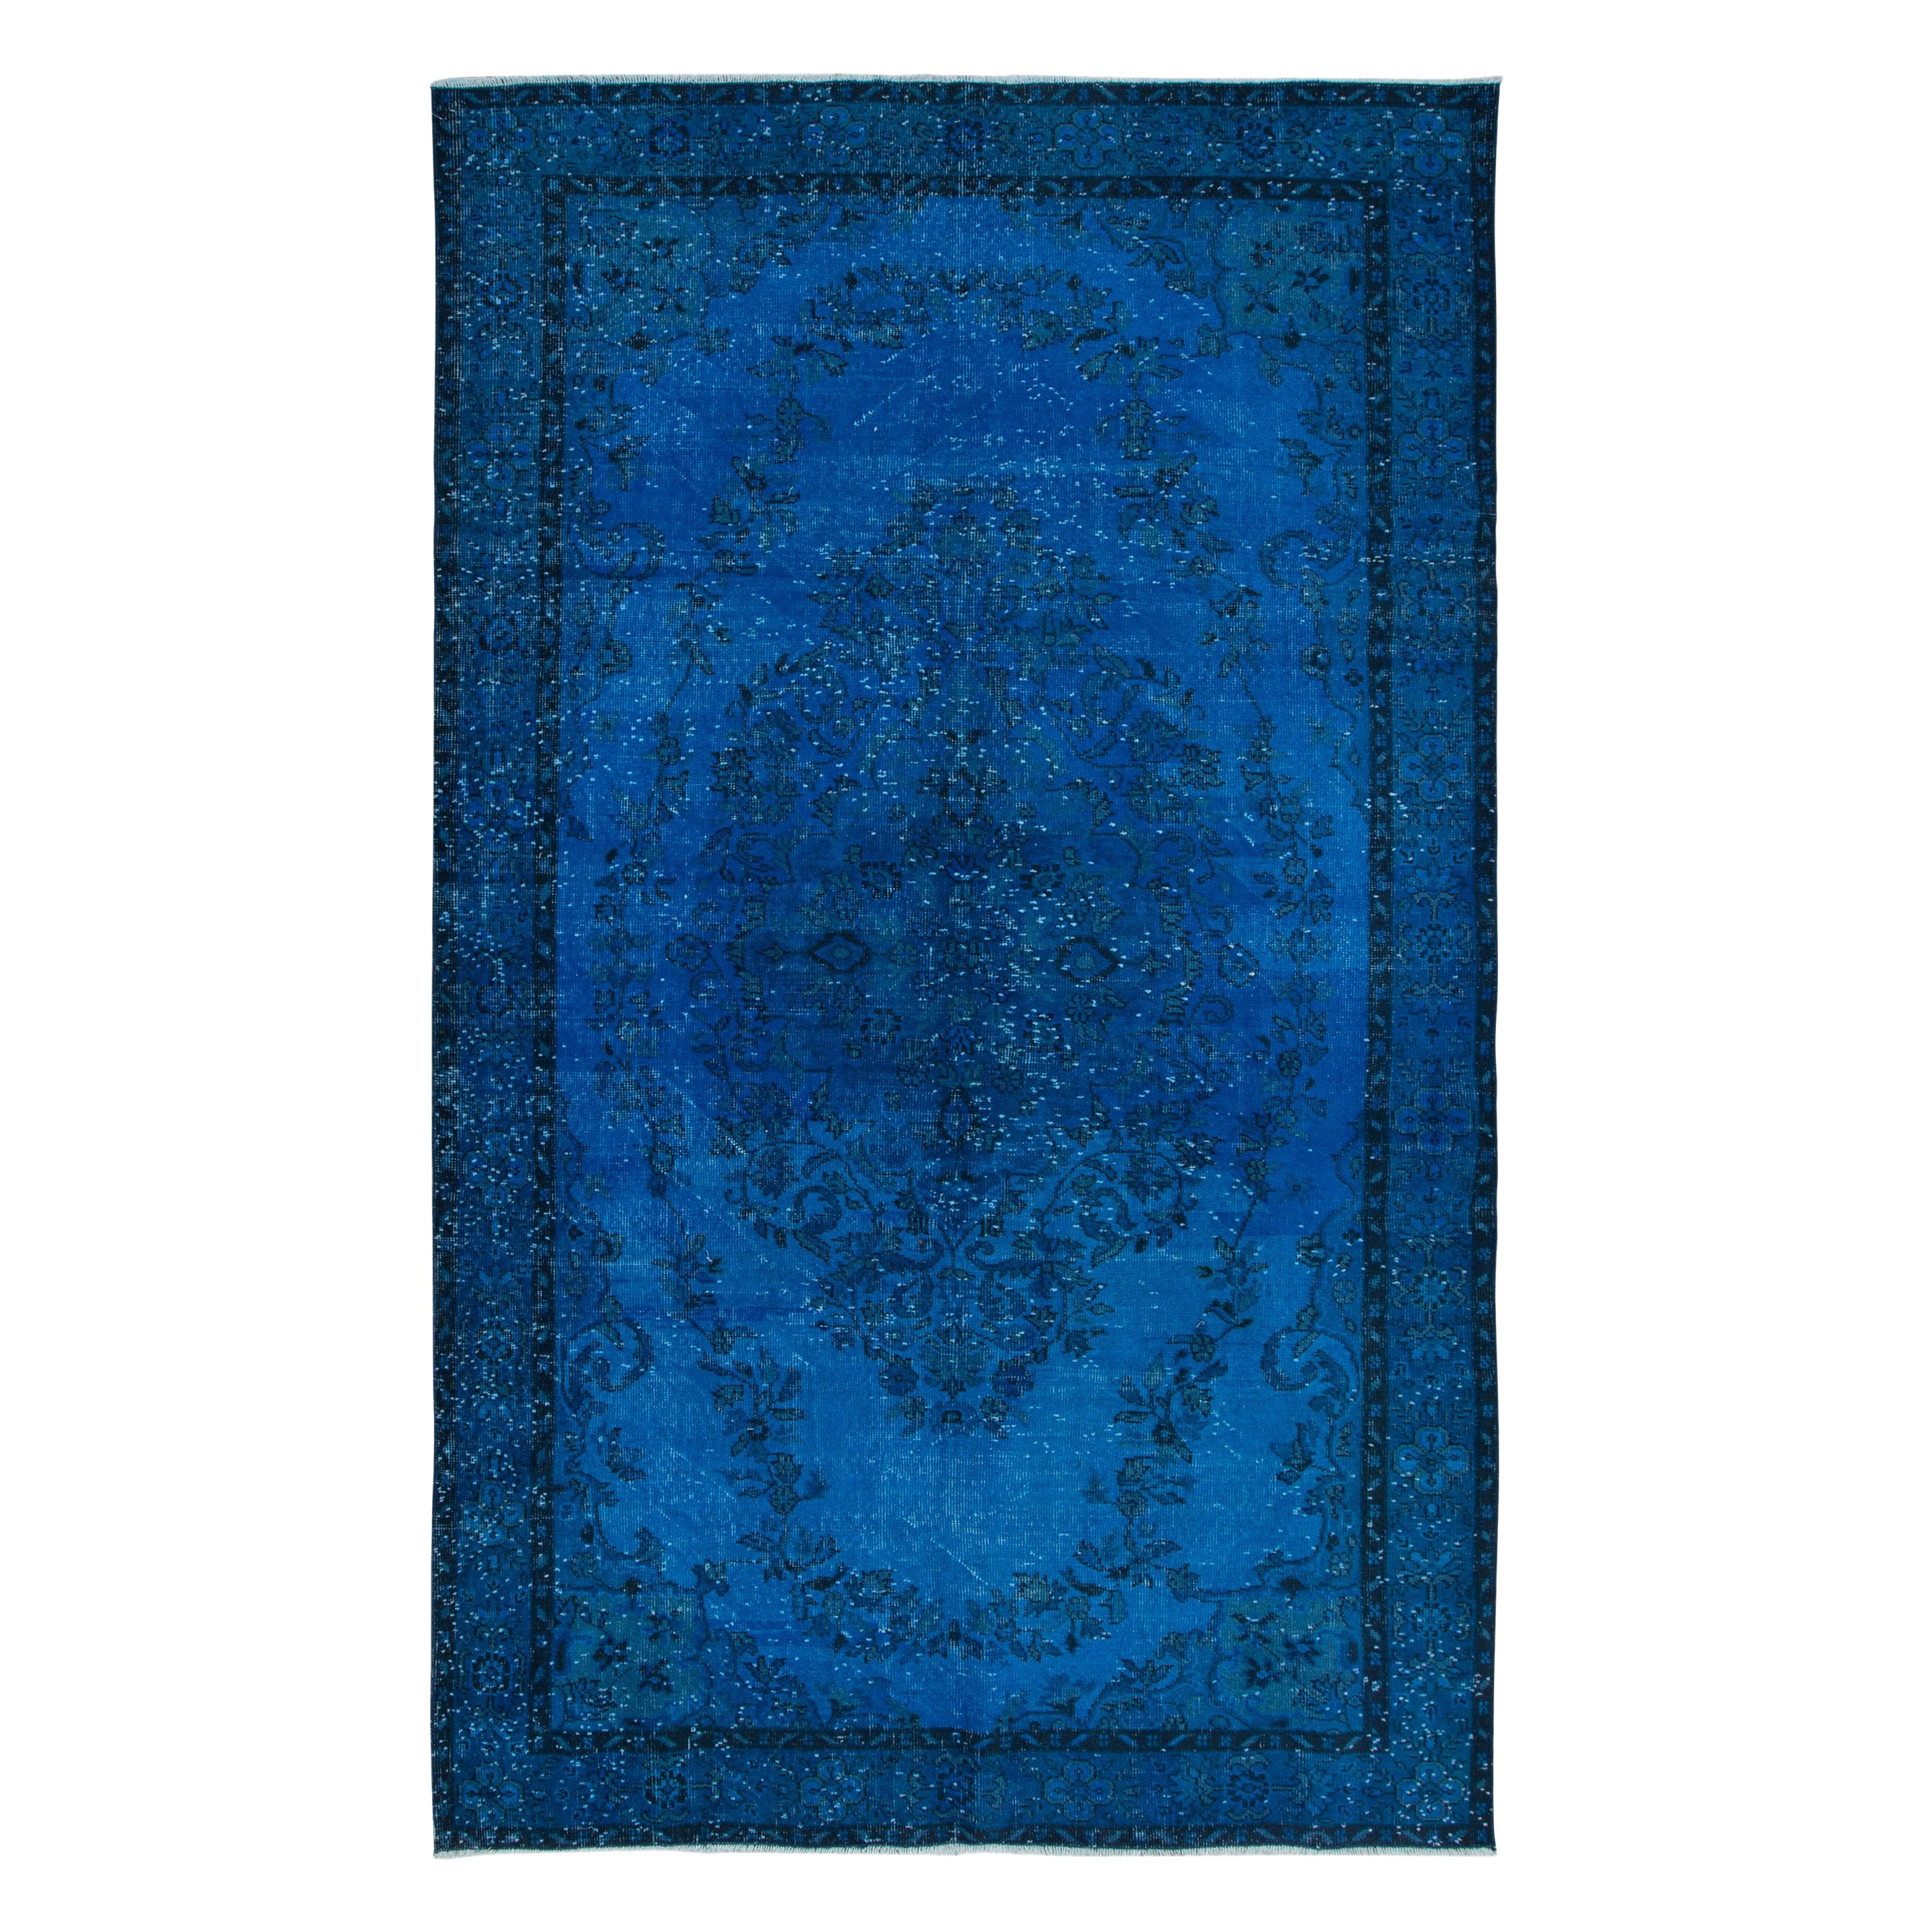 6.2x10.2 Ft Contemporary Blue Area Rug, Handwoven and Handknotted in Turkey (tapis tissé et noué à la main en Turquie)